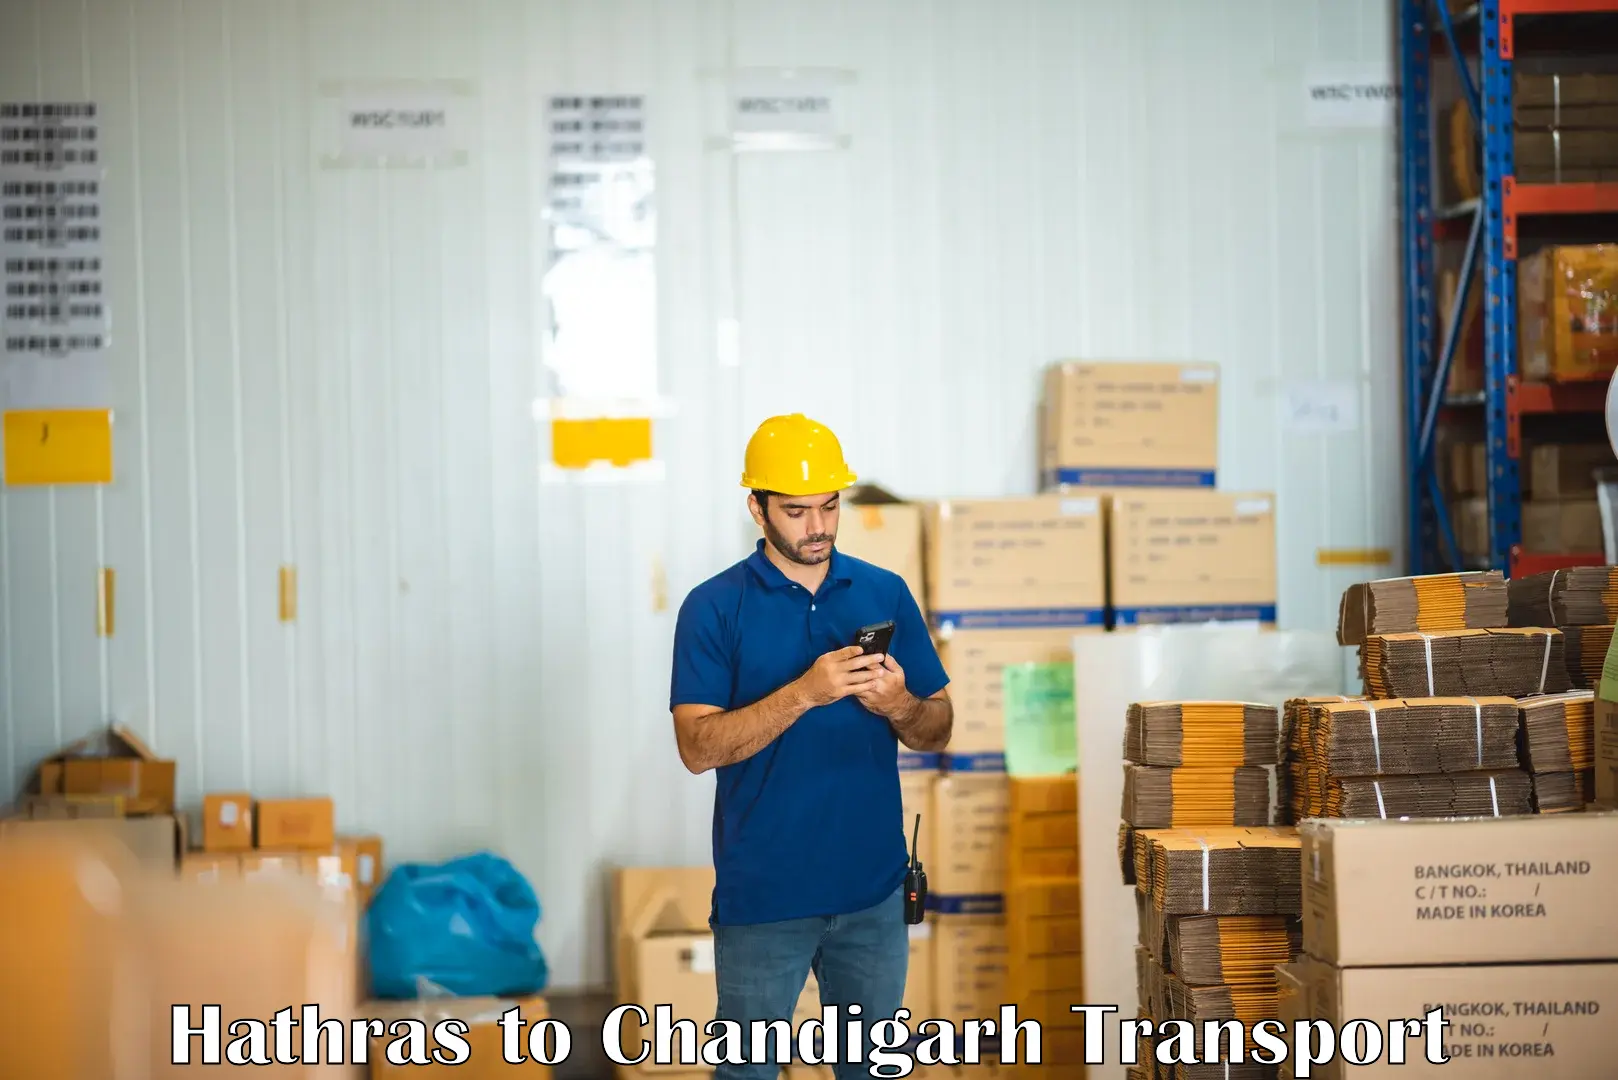 Nearest transport service Hathras to Chandigarh